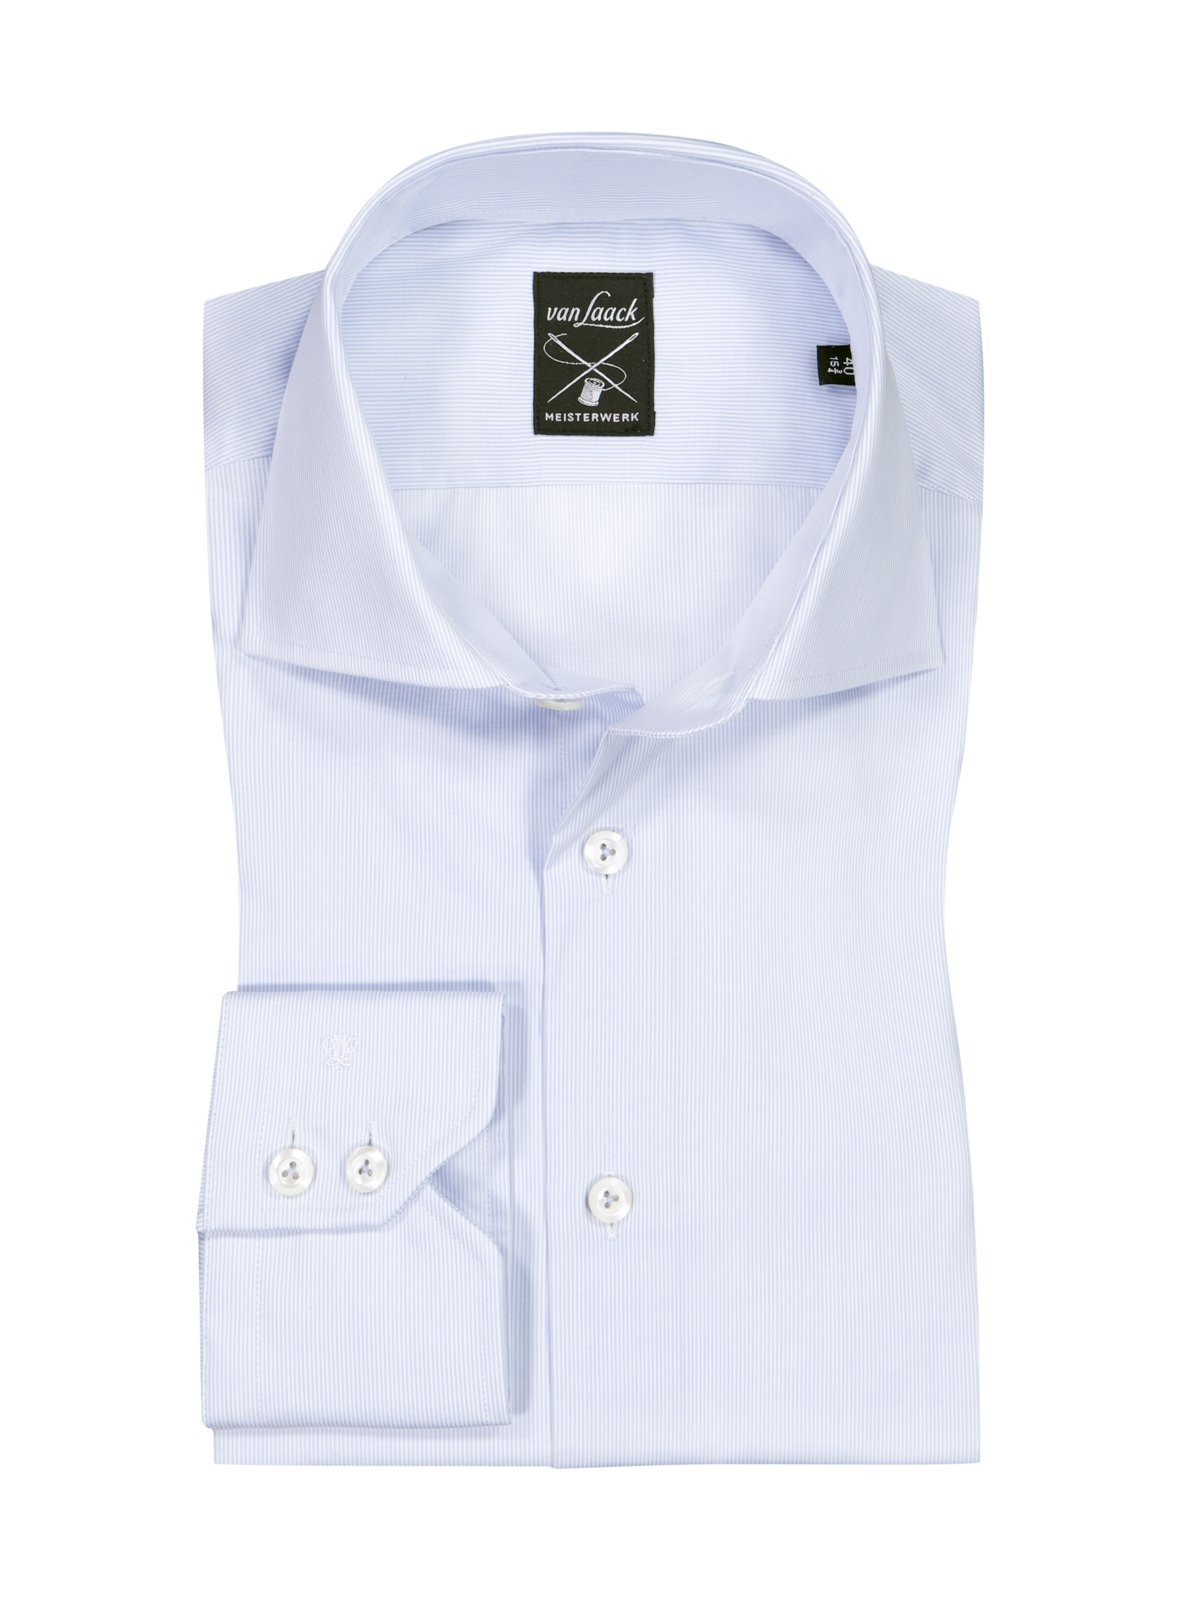 Van Laack Hemd aus Baumwolle mit feinem Streifenmuster, Tailored Fit